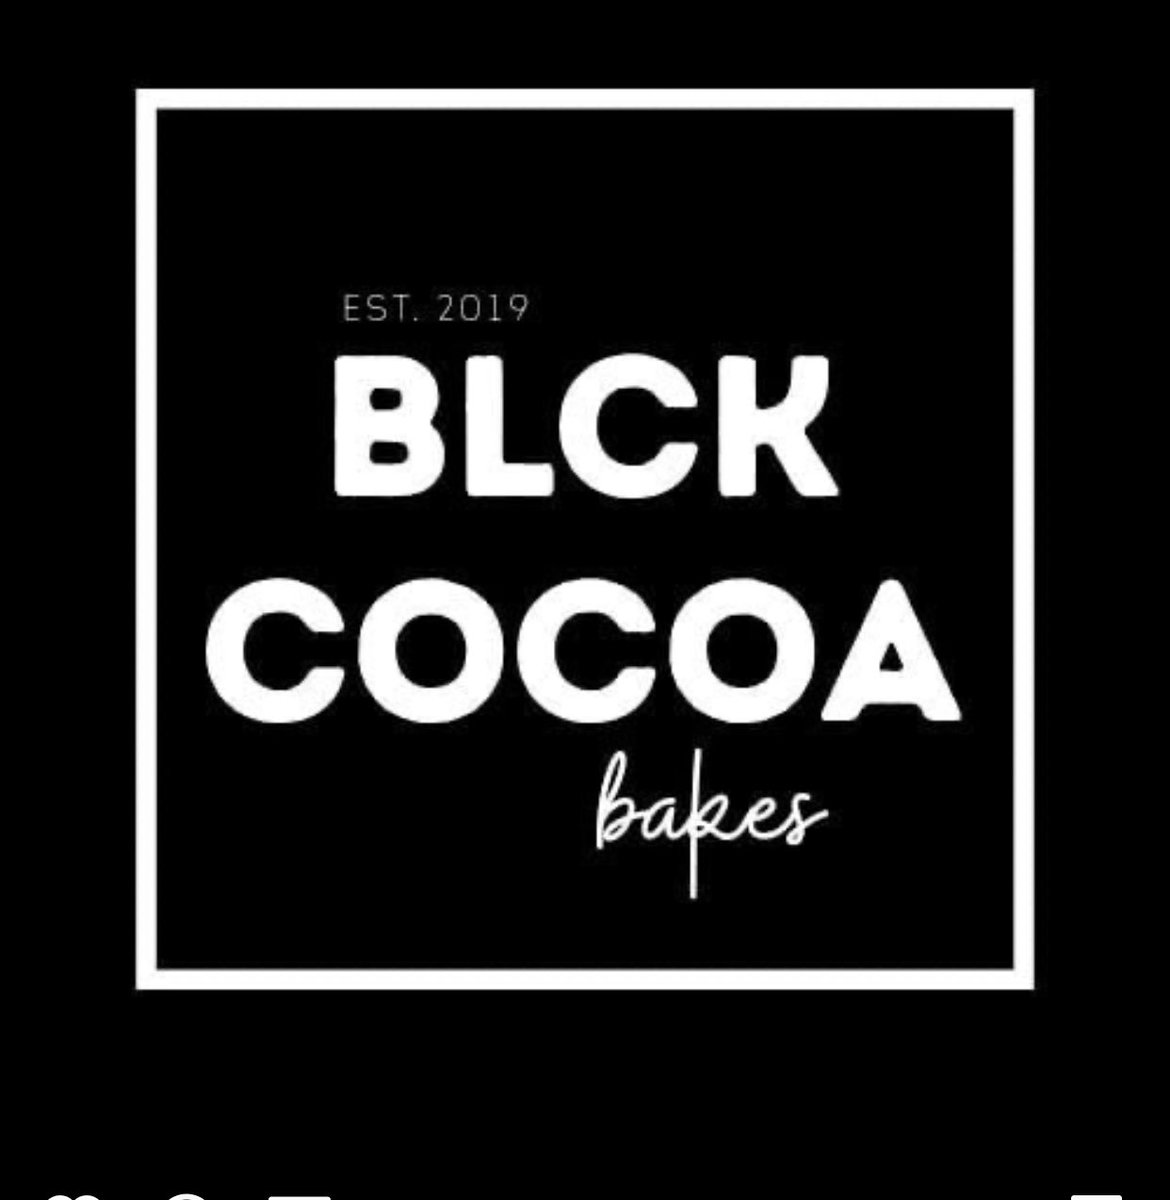 NEW partnership with Blck Cocoa Bakes serving you with delicious vegan baked goodies! Check our IG for more!
#pillarandpride #blckcocoabakes #vegandessert #veganbakery #veganbakedgoods #vegancake #vegancookies #veganpastries #detroit #blackownedbusiness #blackownedveganbakery